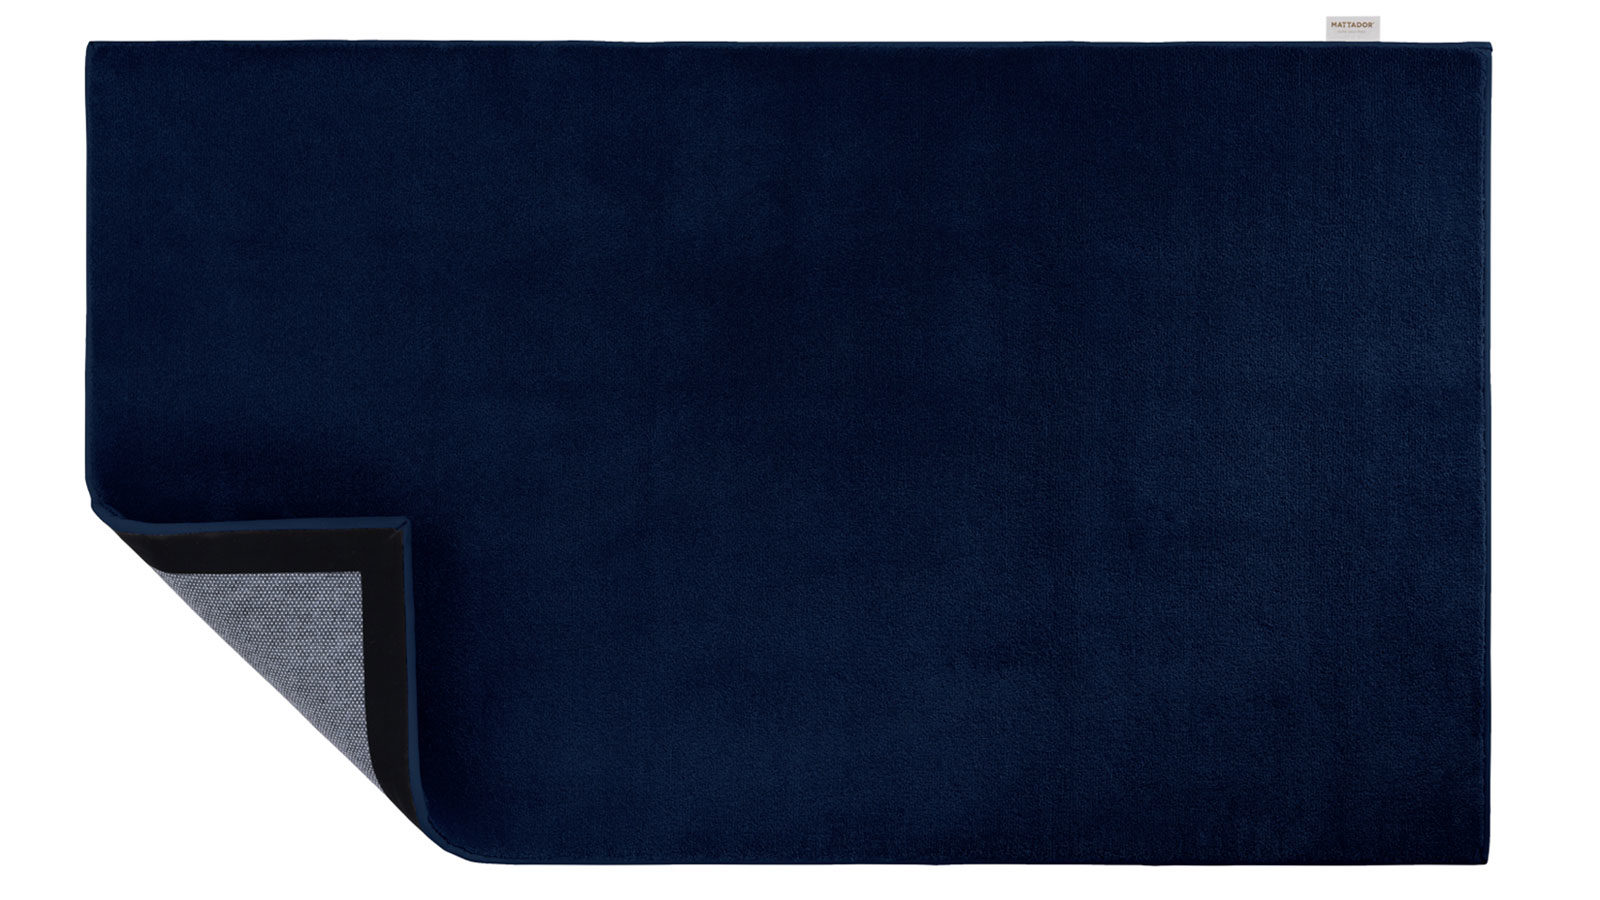 Bovenaanzicht van blauw vloerkleed met in de hoek zicht op de onderkant van de mat